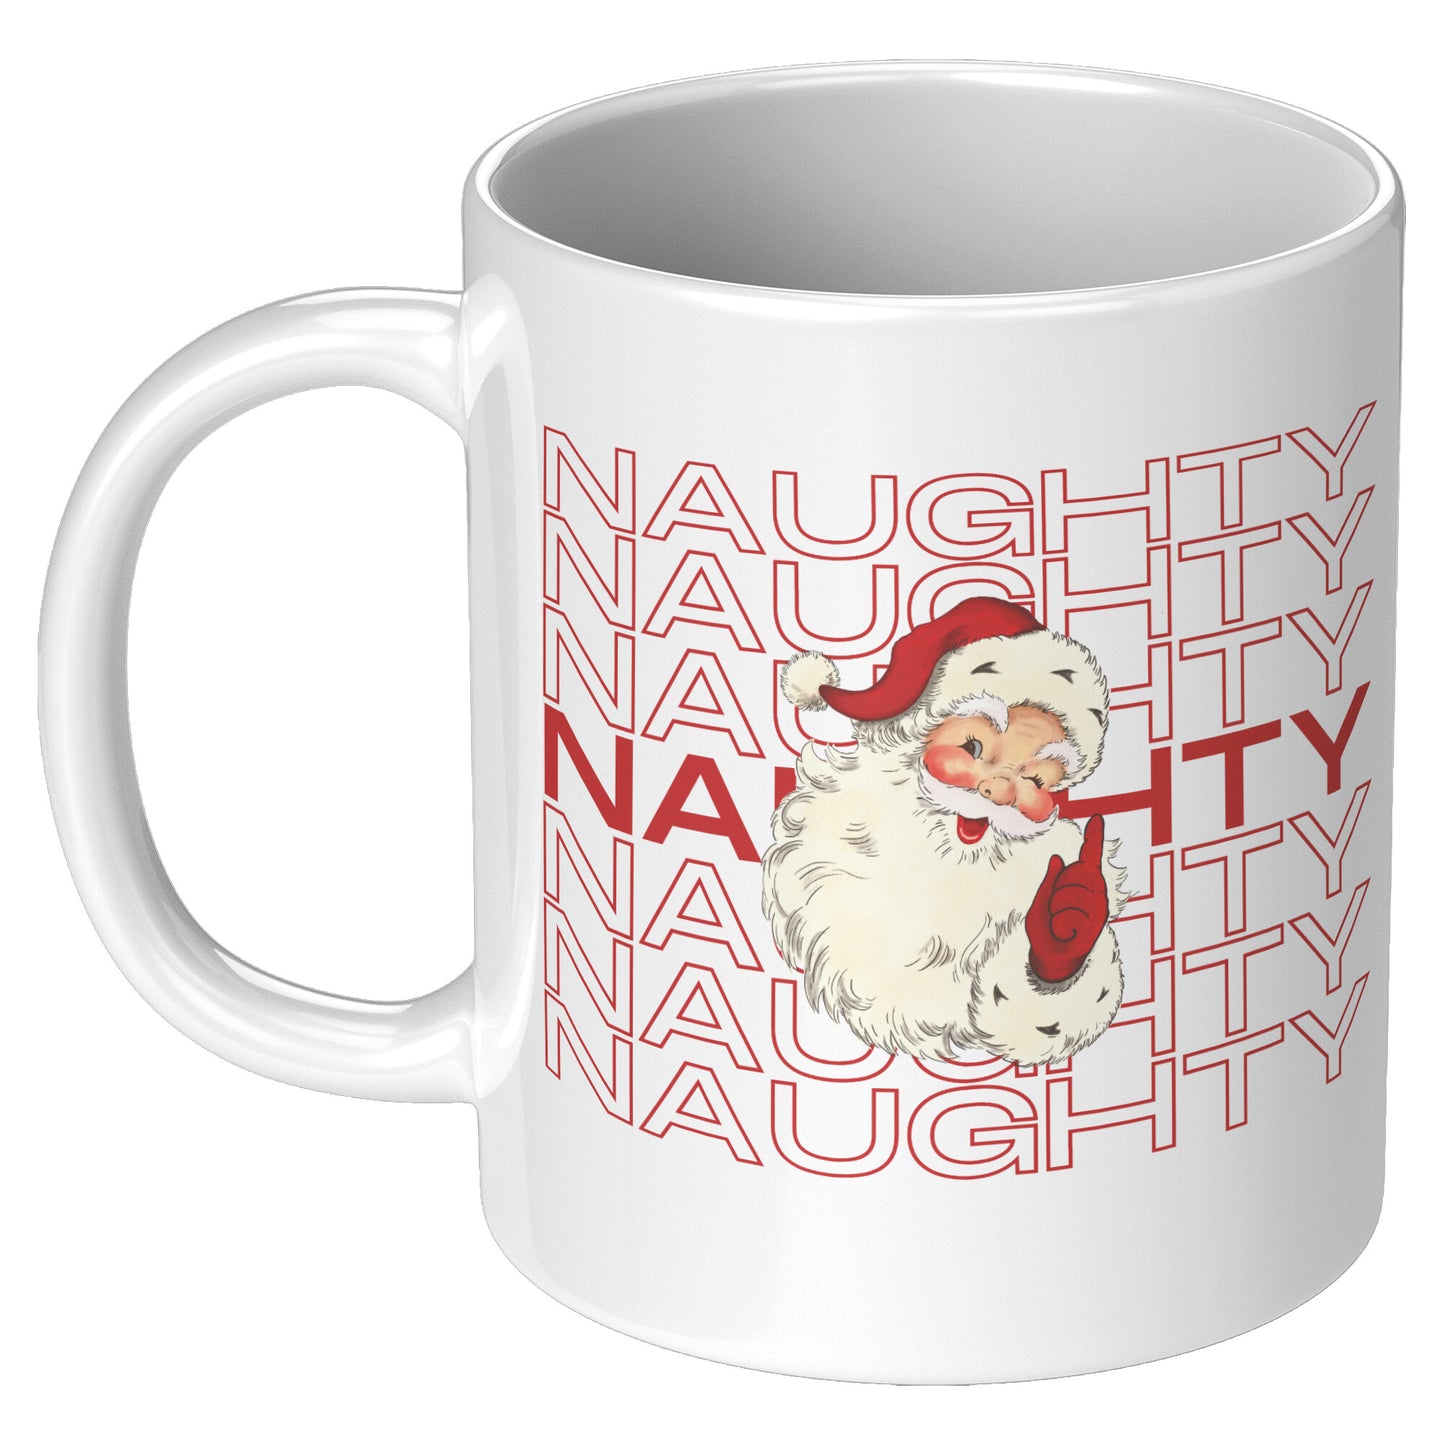 Naughty Nice Naughty Retro Santa Christmas Mug